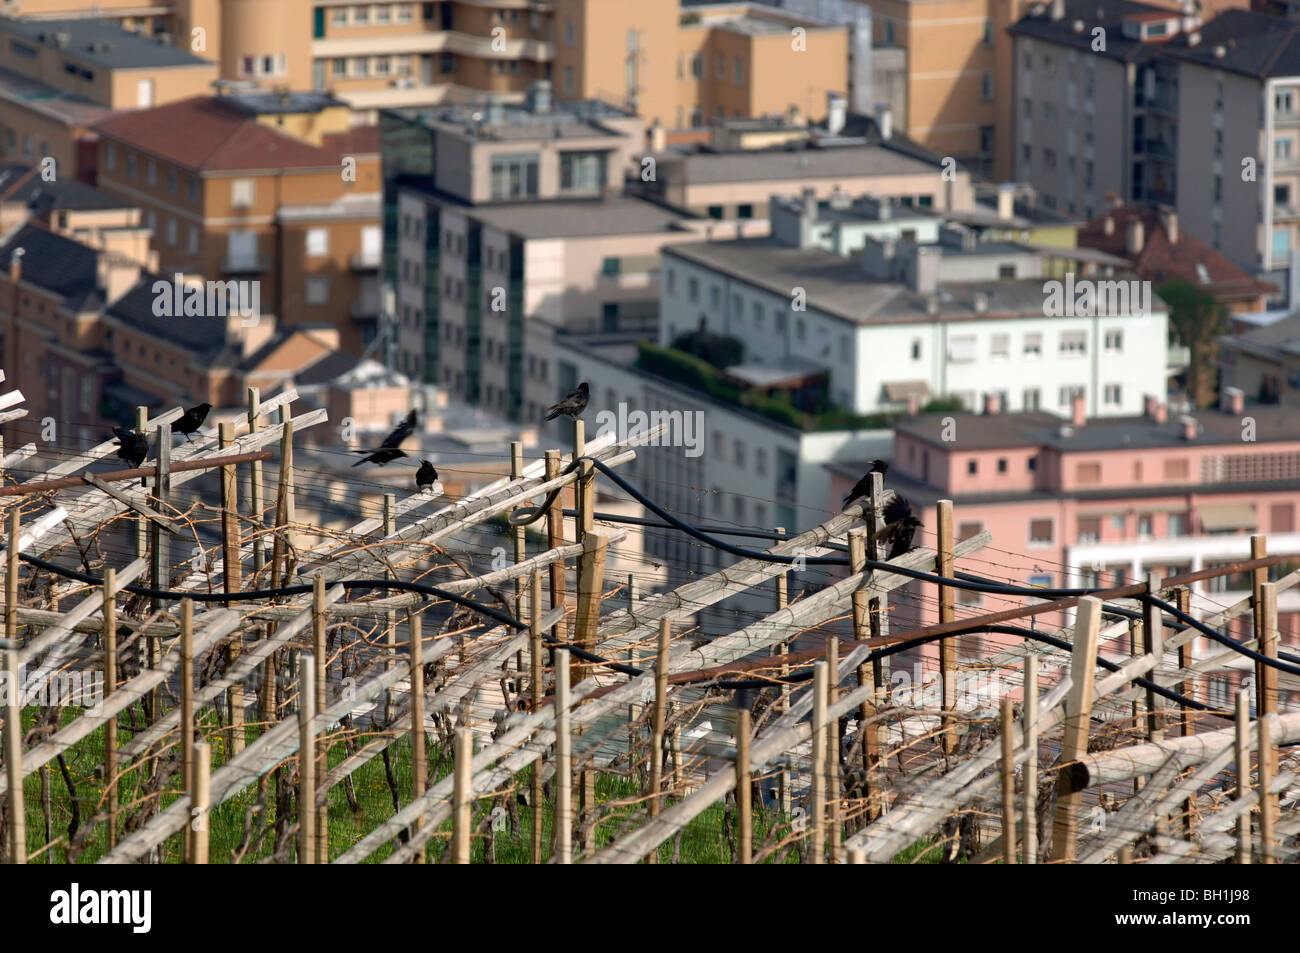 Vigne con appartamento immobili in background, Bolzano, Alto Adige, Italia Foto Stock